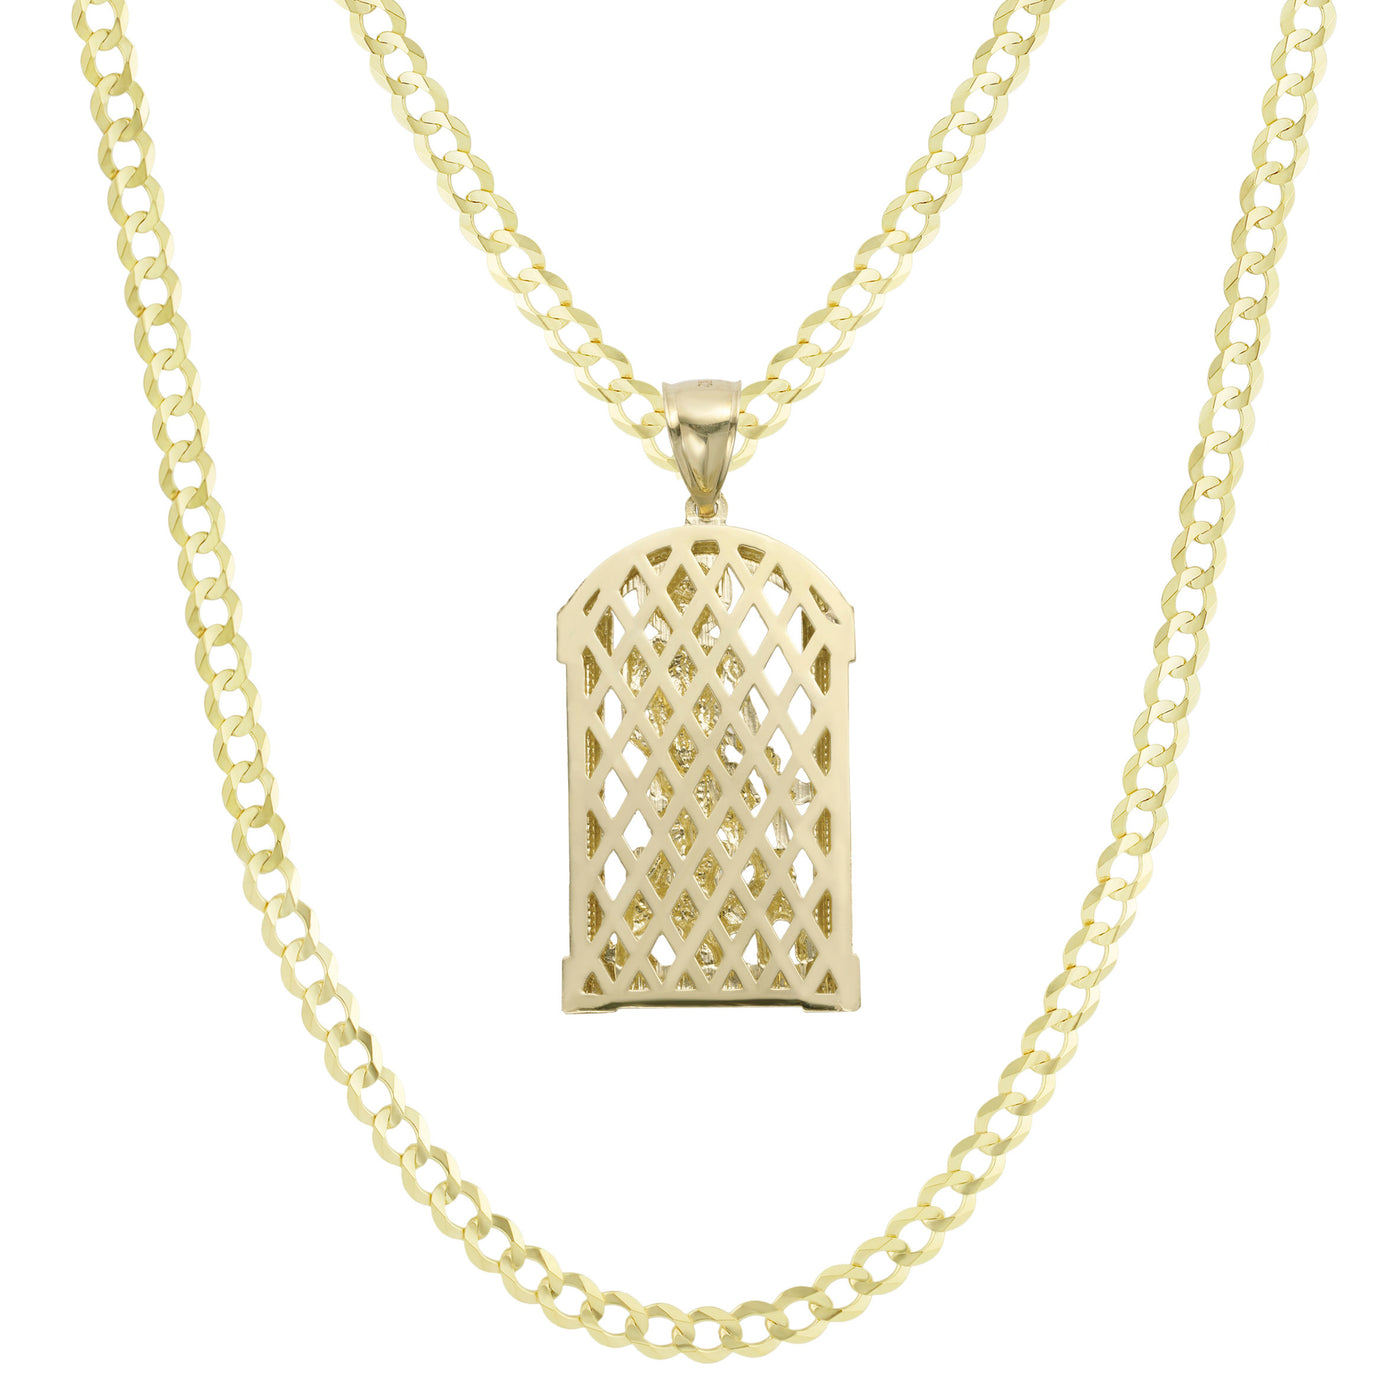 2" Saint Michael Pendant & Chain Necklace Set 10K Yellow Gold